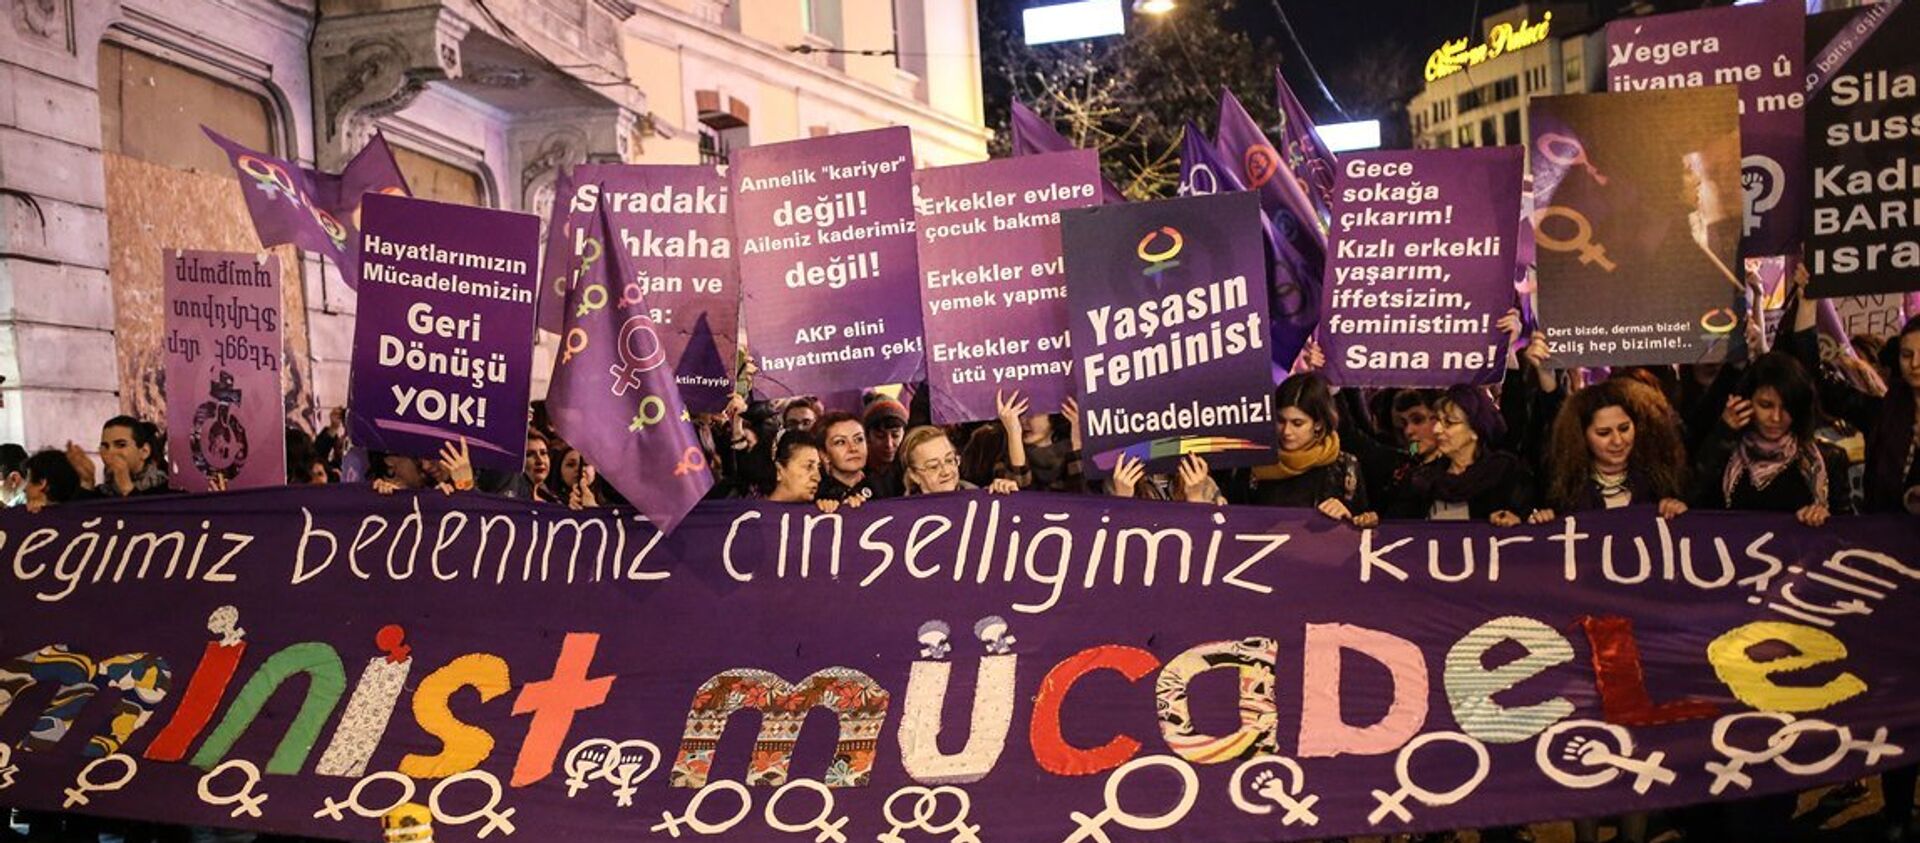 8 Mart Feminist Gece Yürüyüşü - Sputnik Türkiye, 1920, 10.12.2020